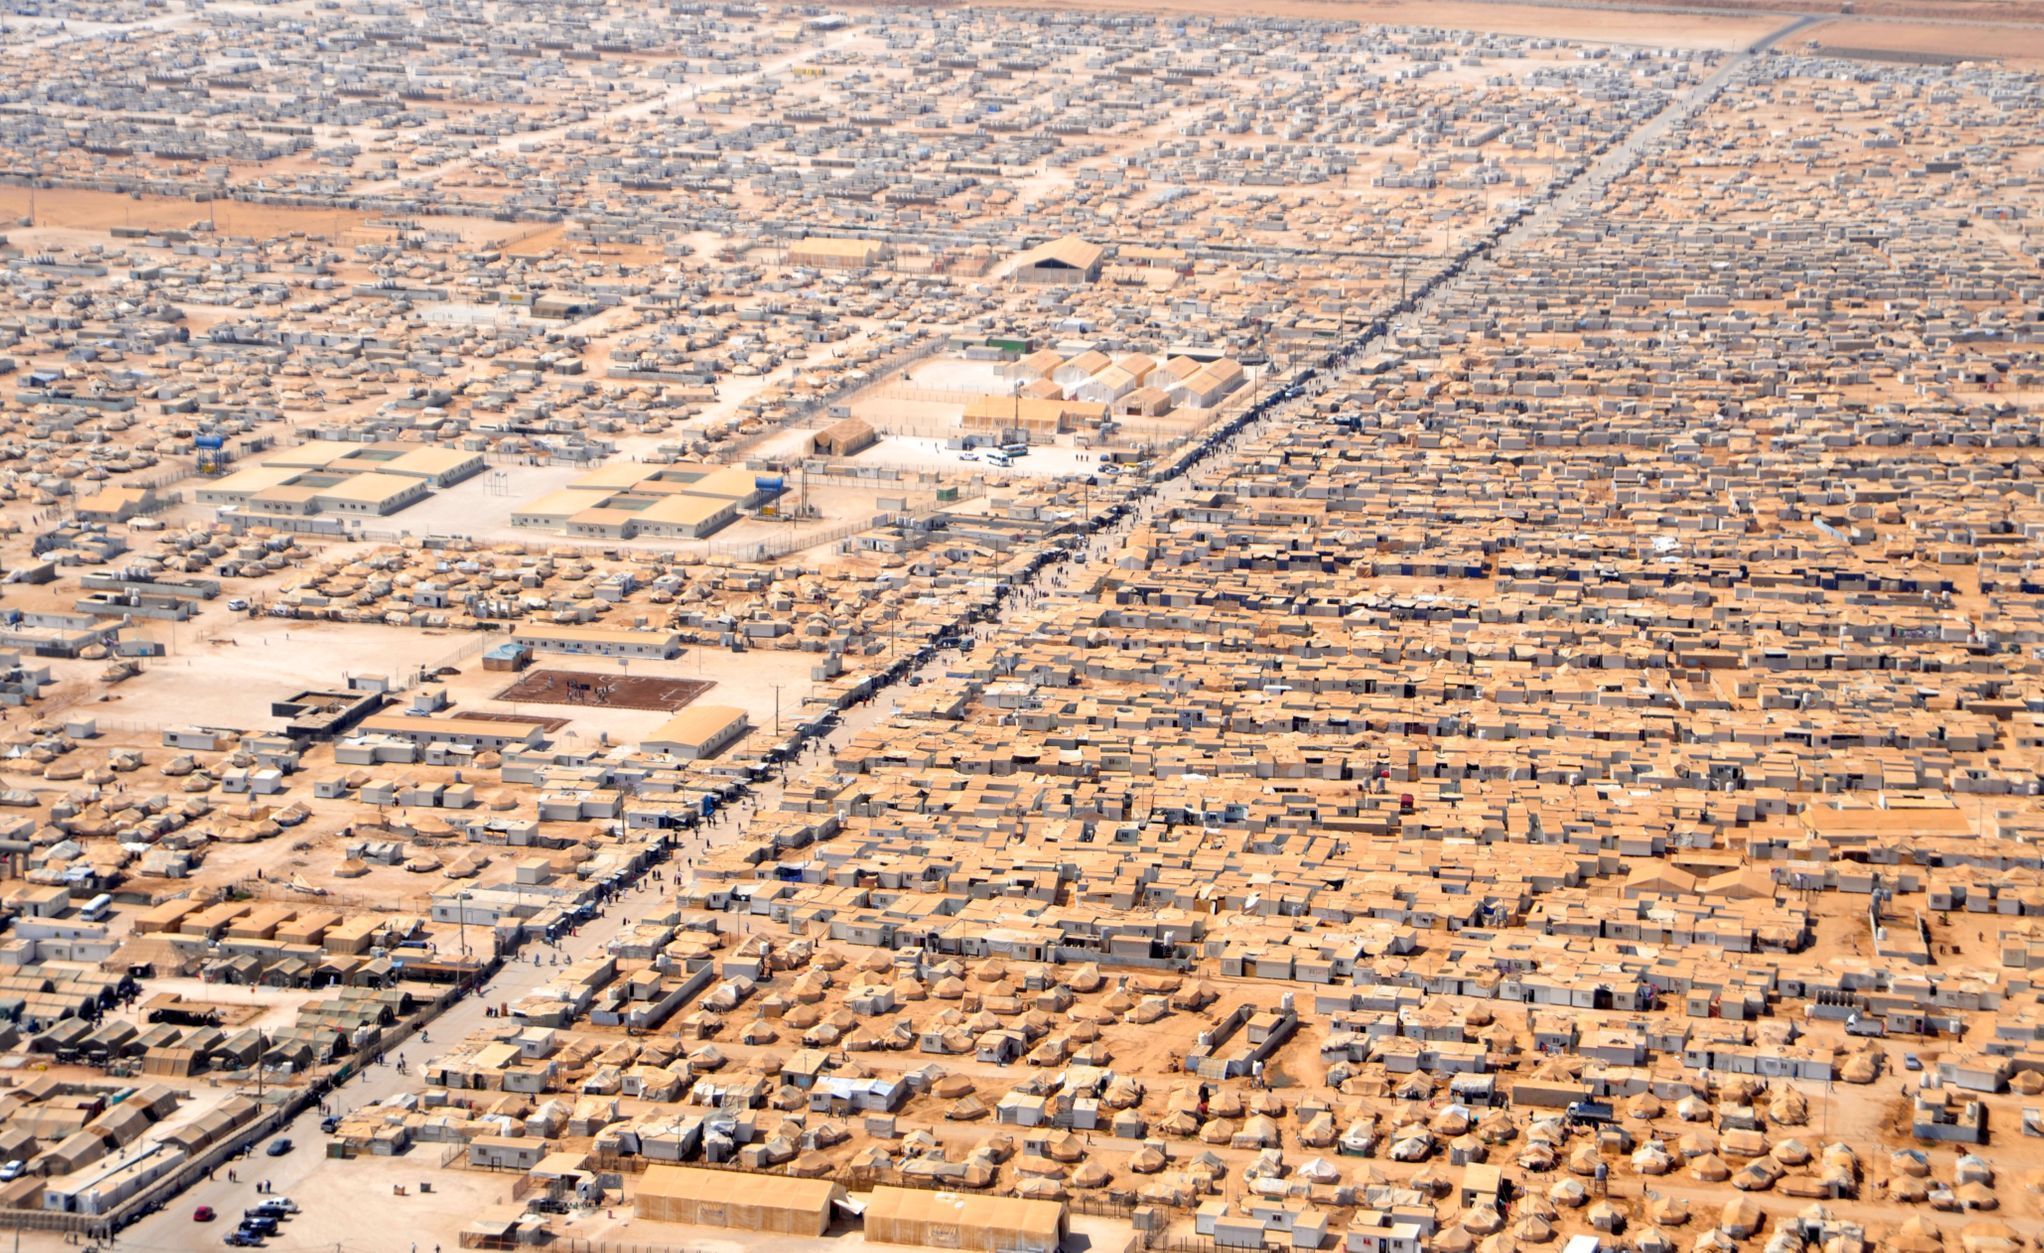 Jordánsko - uprchlický tábor - Zátarí